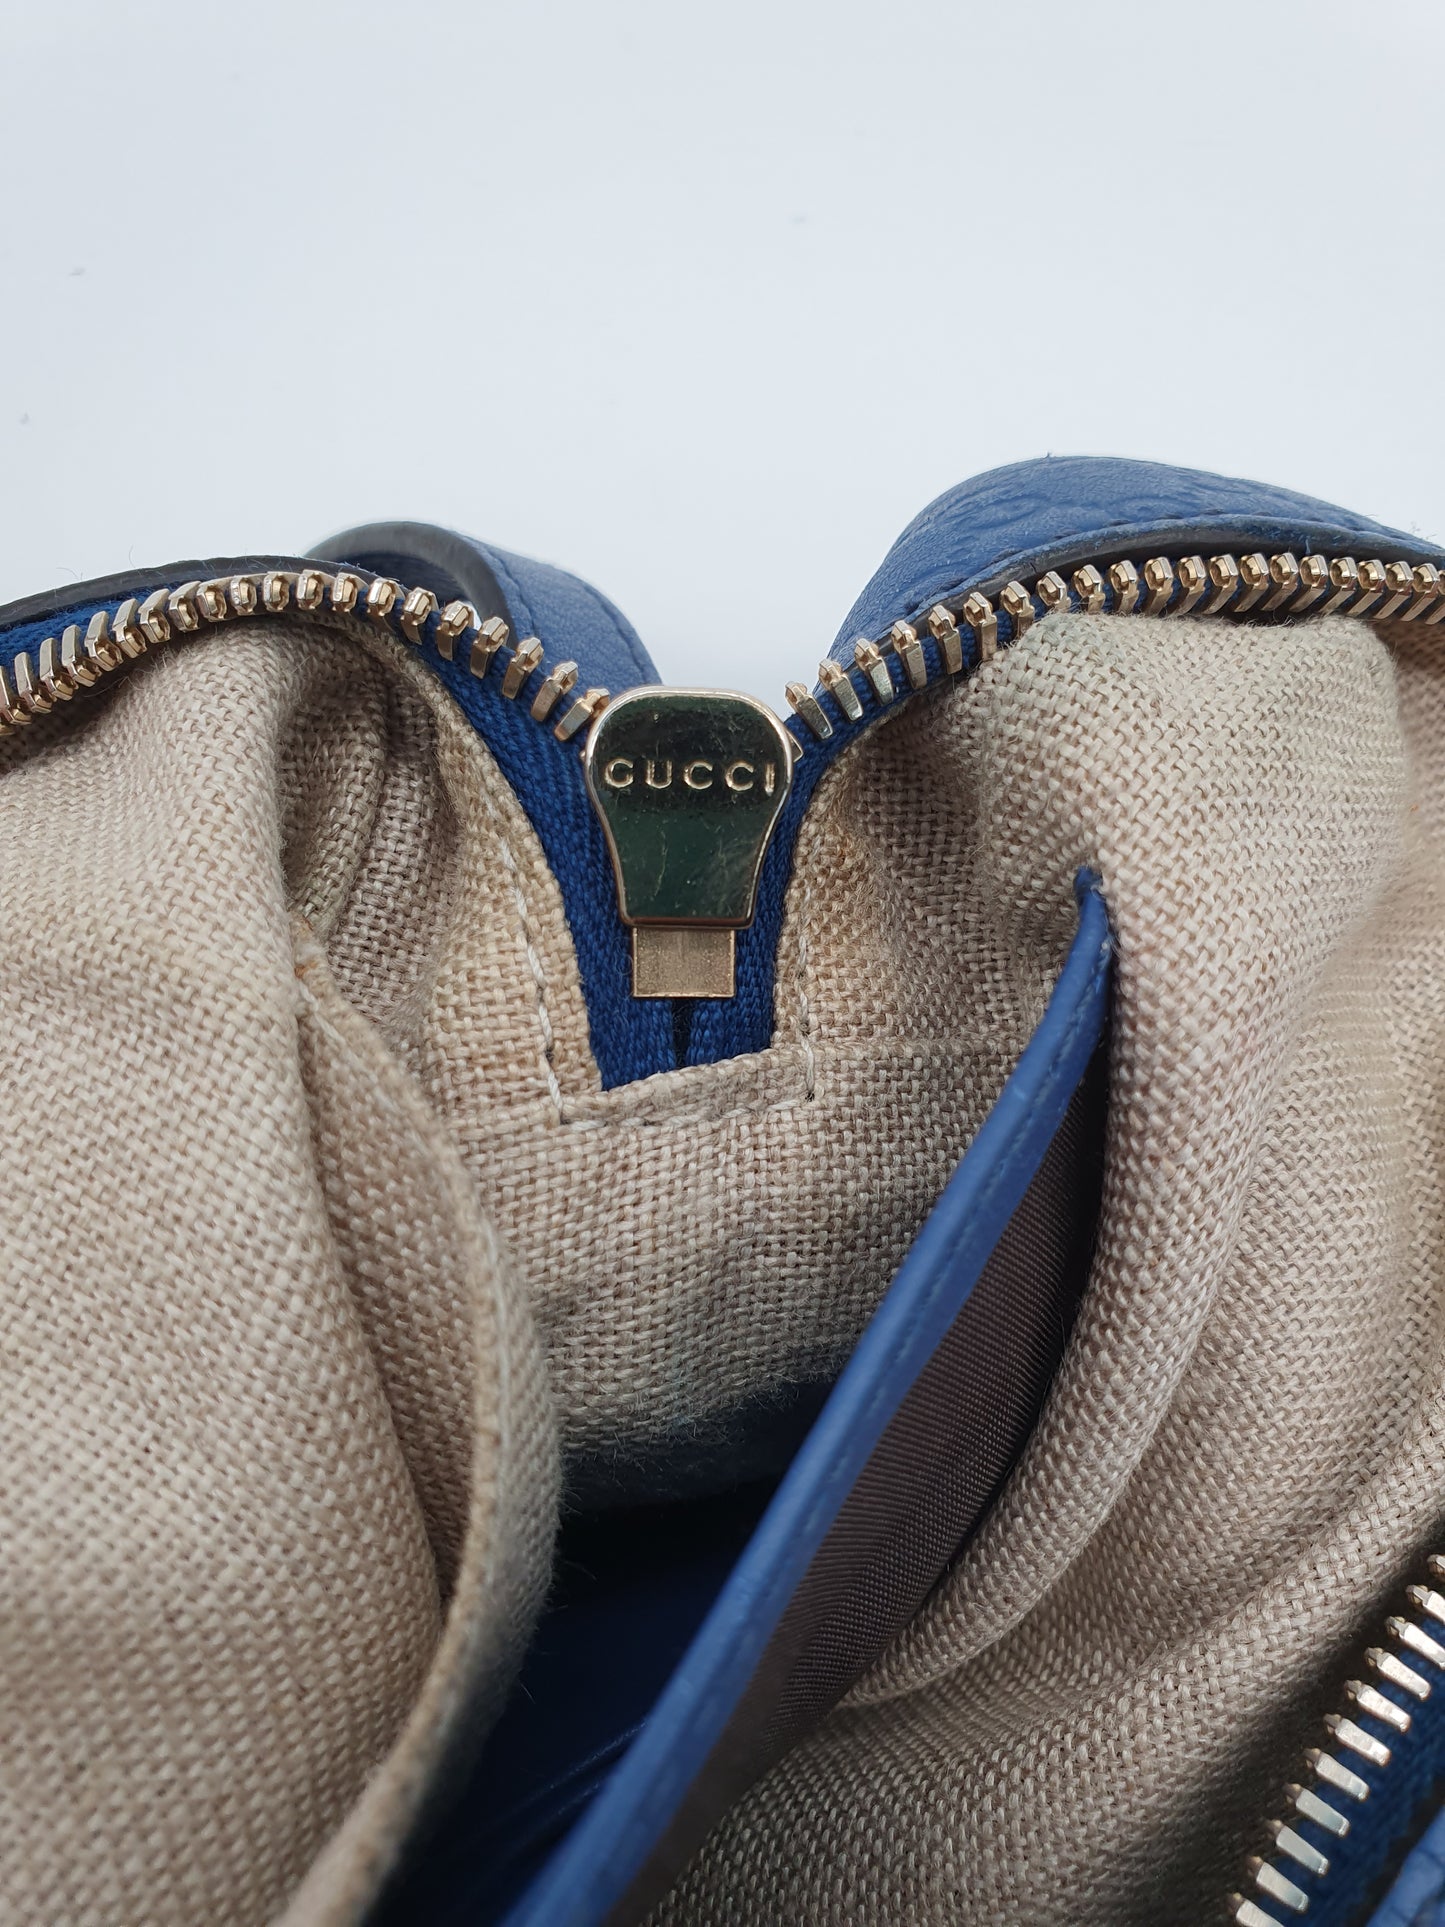 Gucci bree crossbody bag